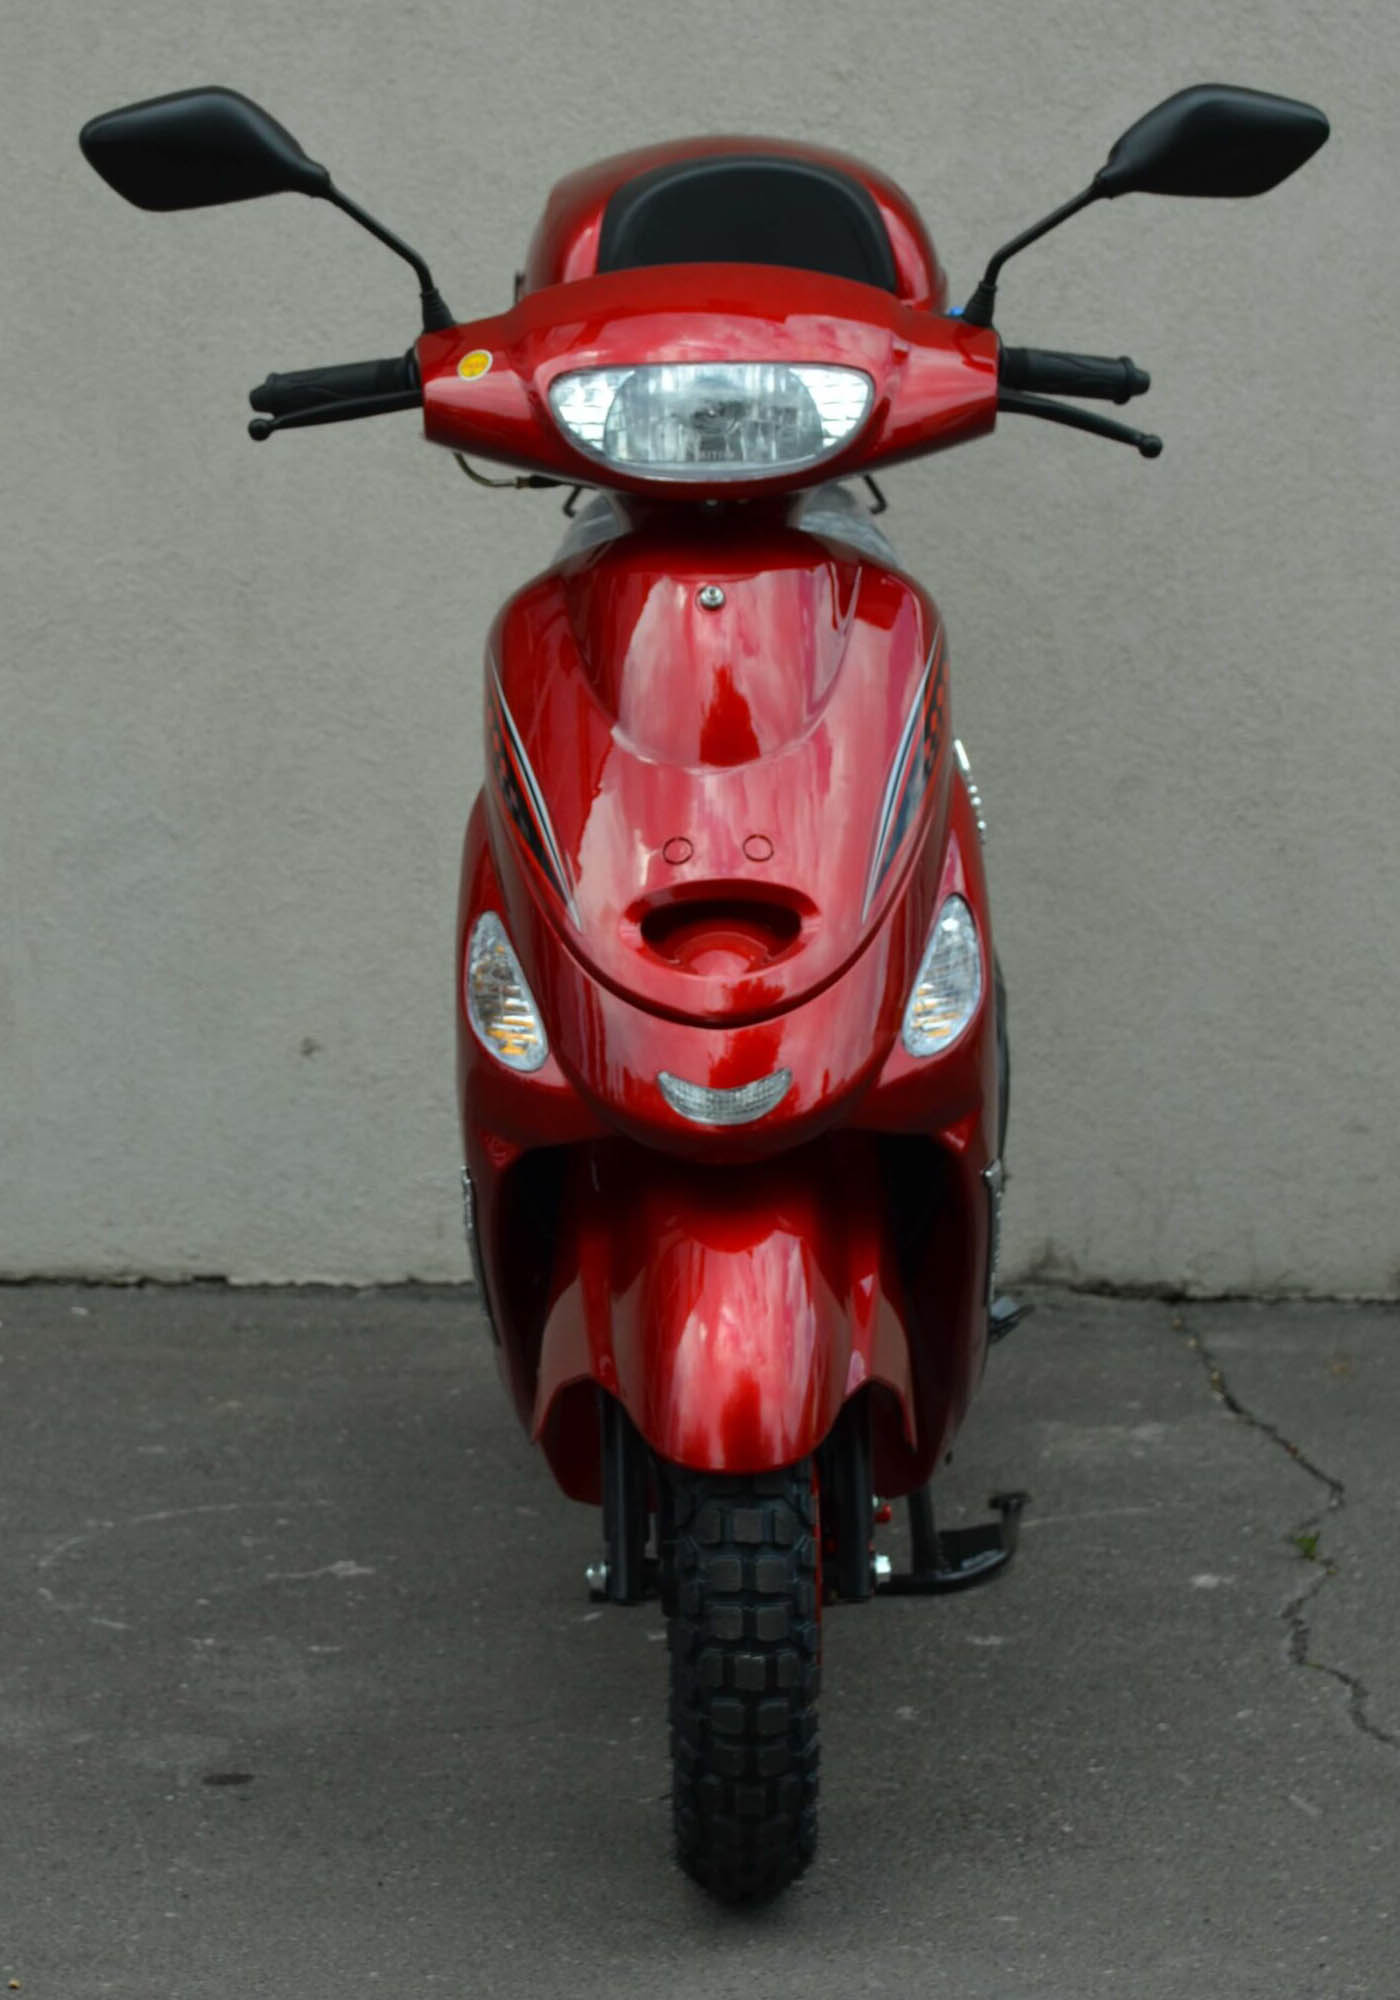 Скутер Санни 49.9 цвет красный вид спереди купить по низкой цене